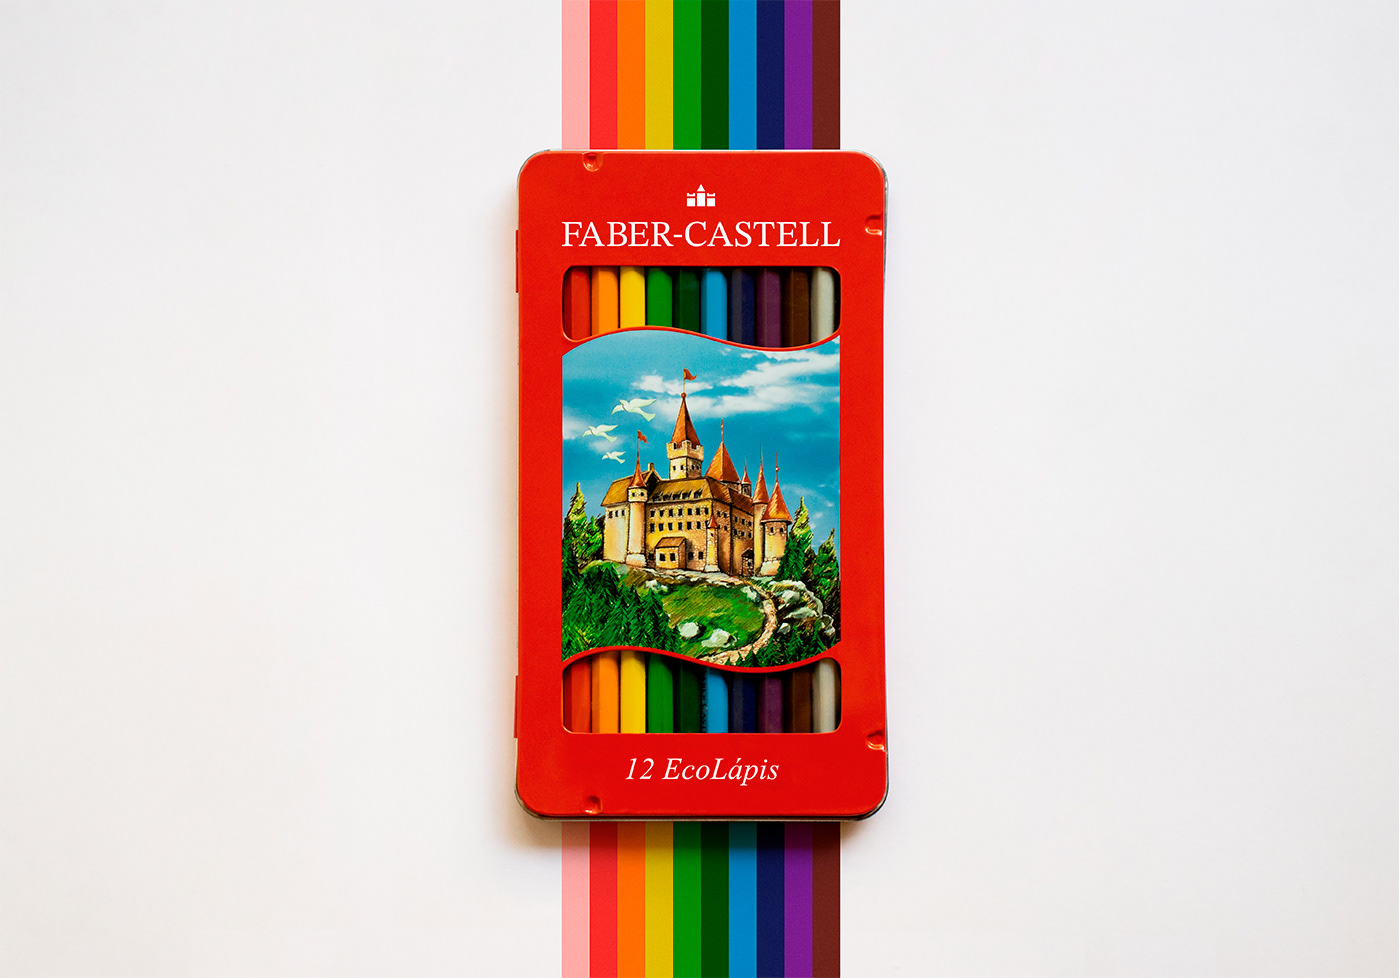 castel FABER faber-castell identidade visual Logotipo novas marcas pencil Rebrand rebrand faber-castell redesign